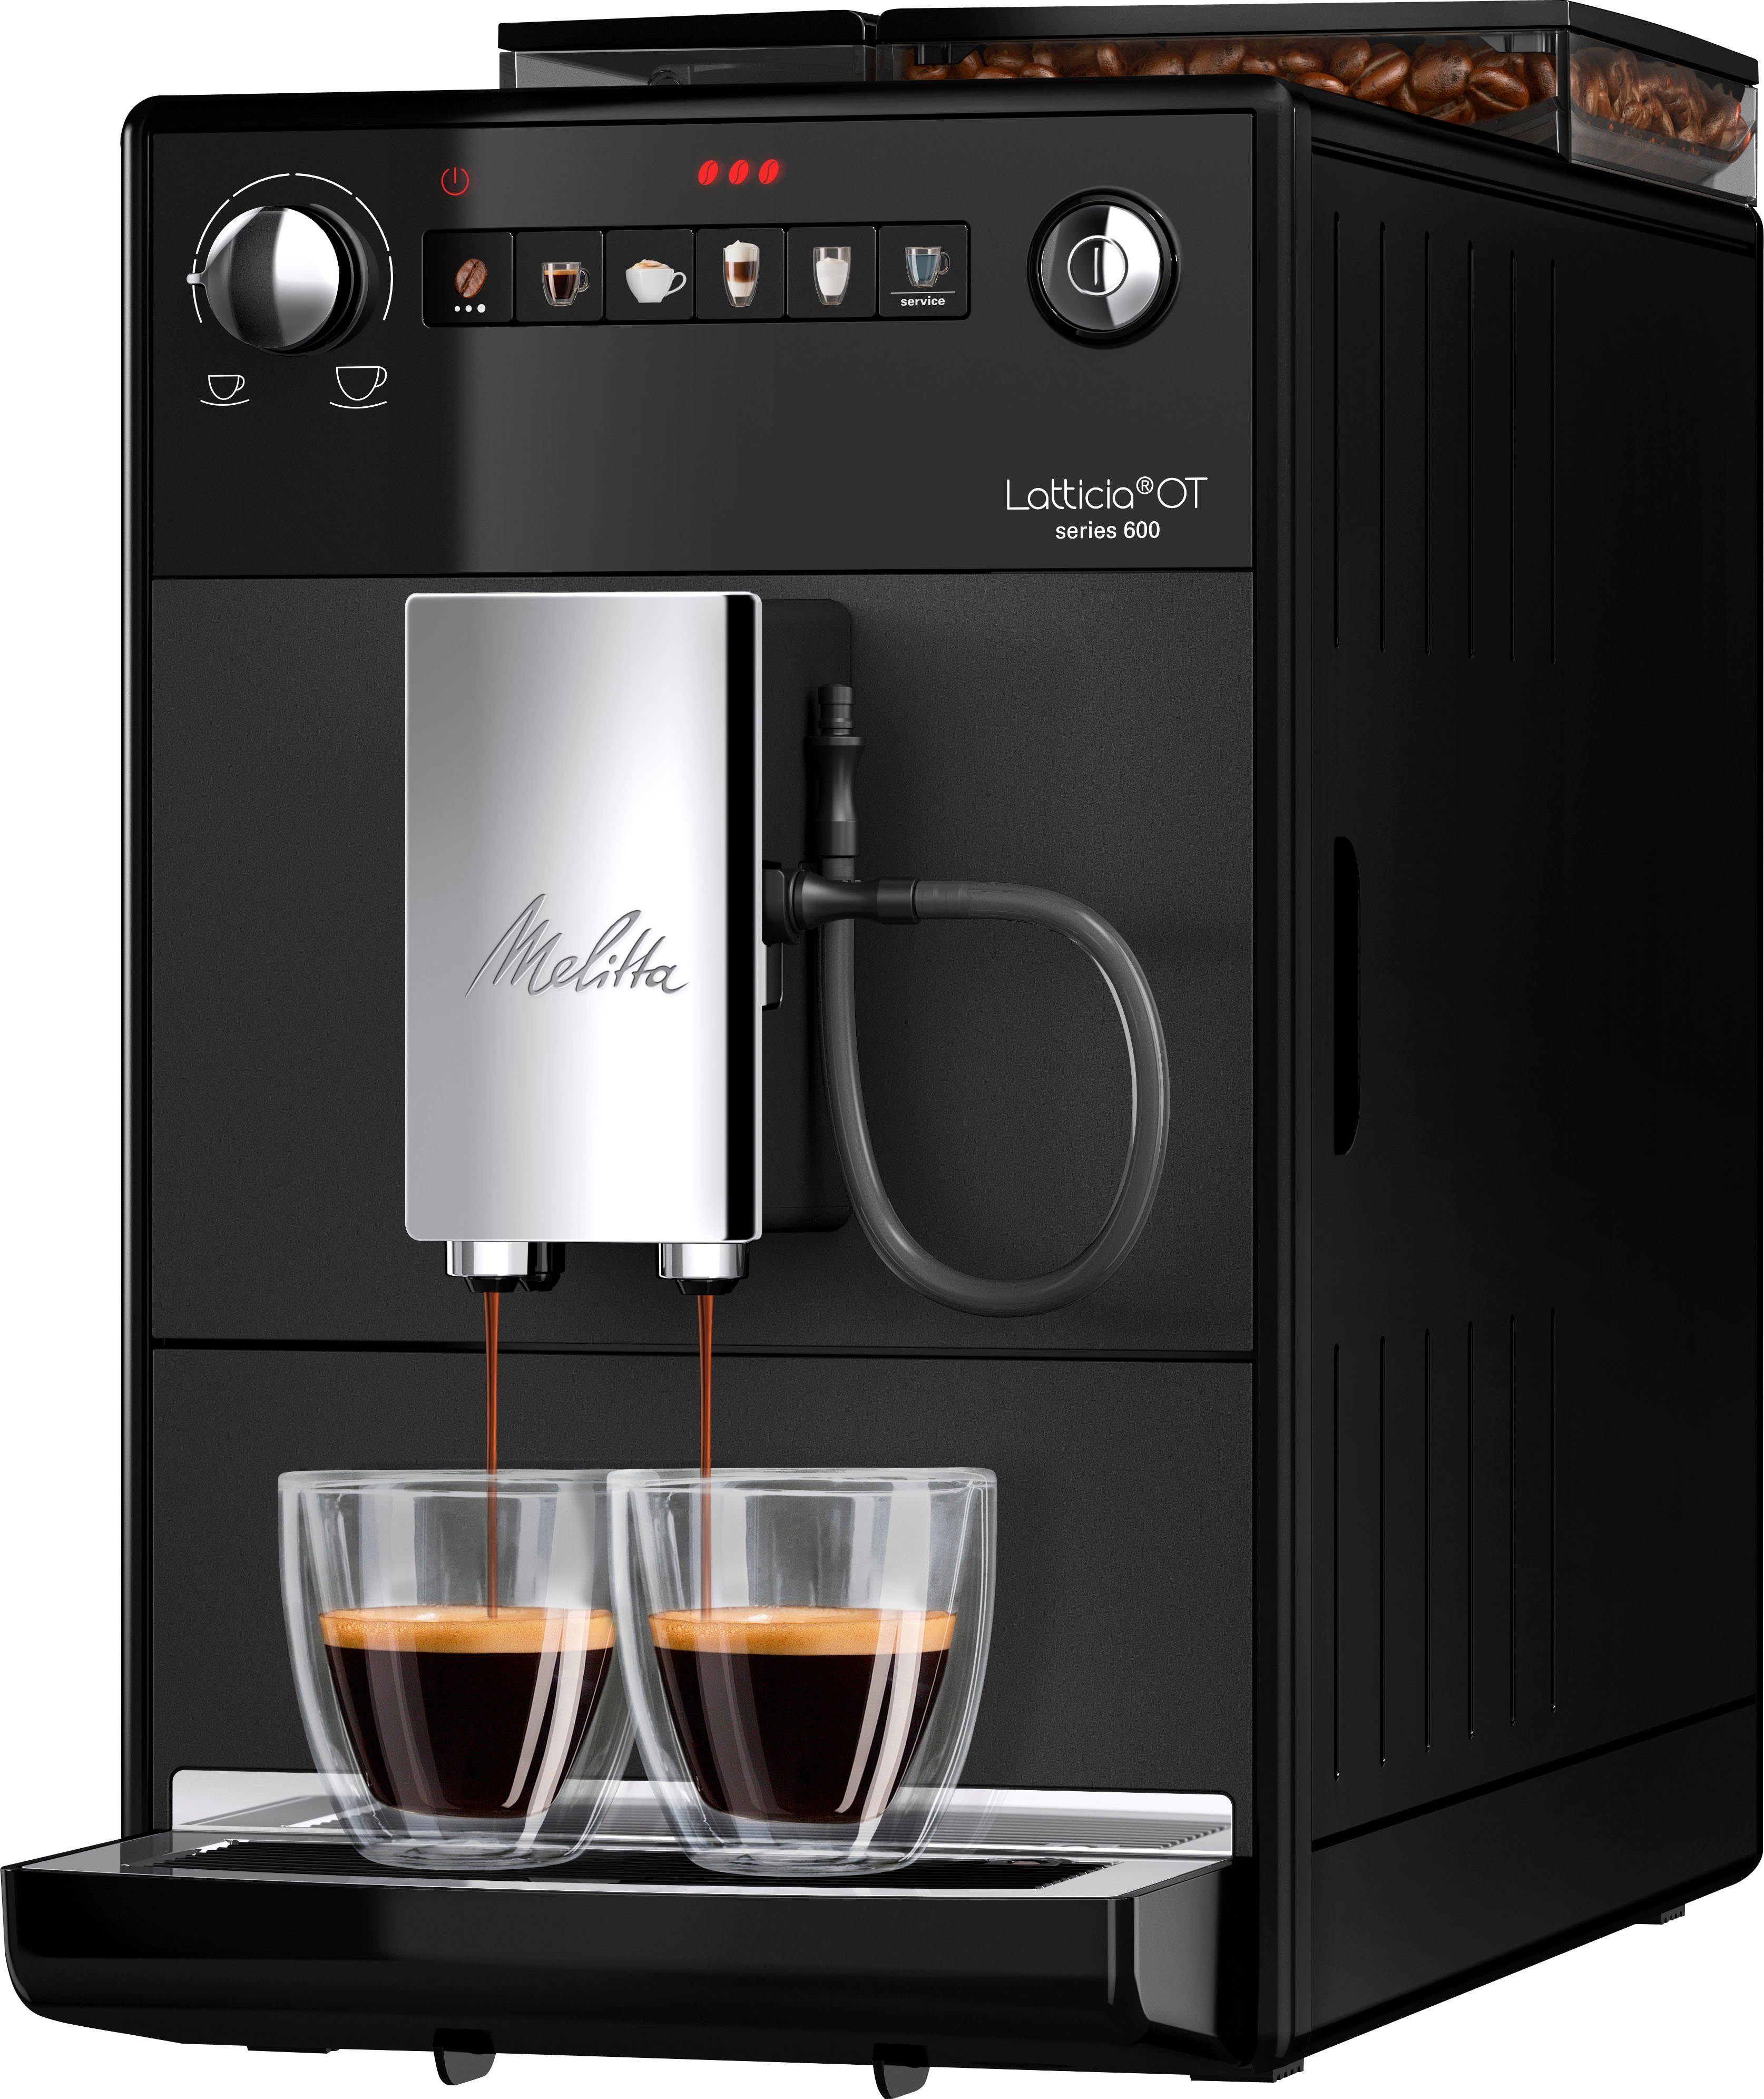 XL XL Latticia® Wassertank schwarz, Touch kompakt, Melitta Kaffeevollautomat One Bohnenbehälter F300-100, & aber